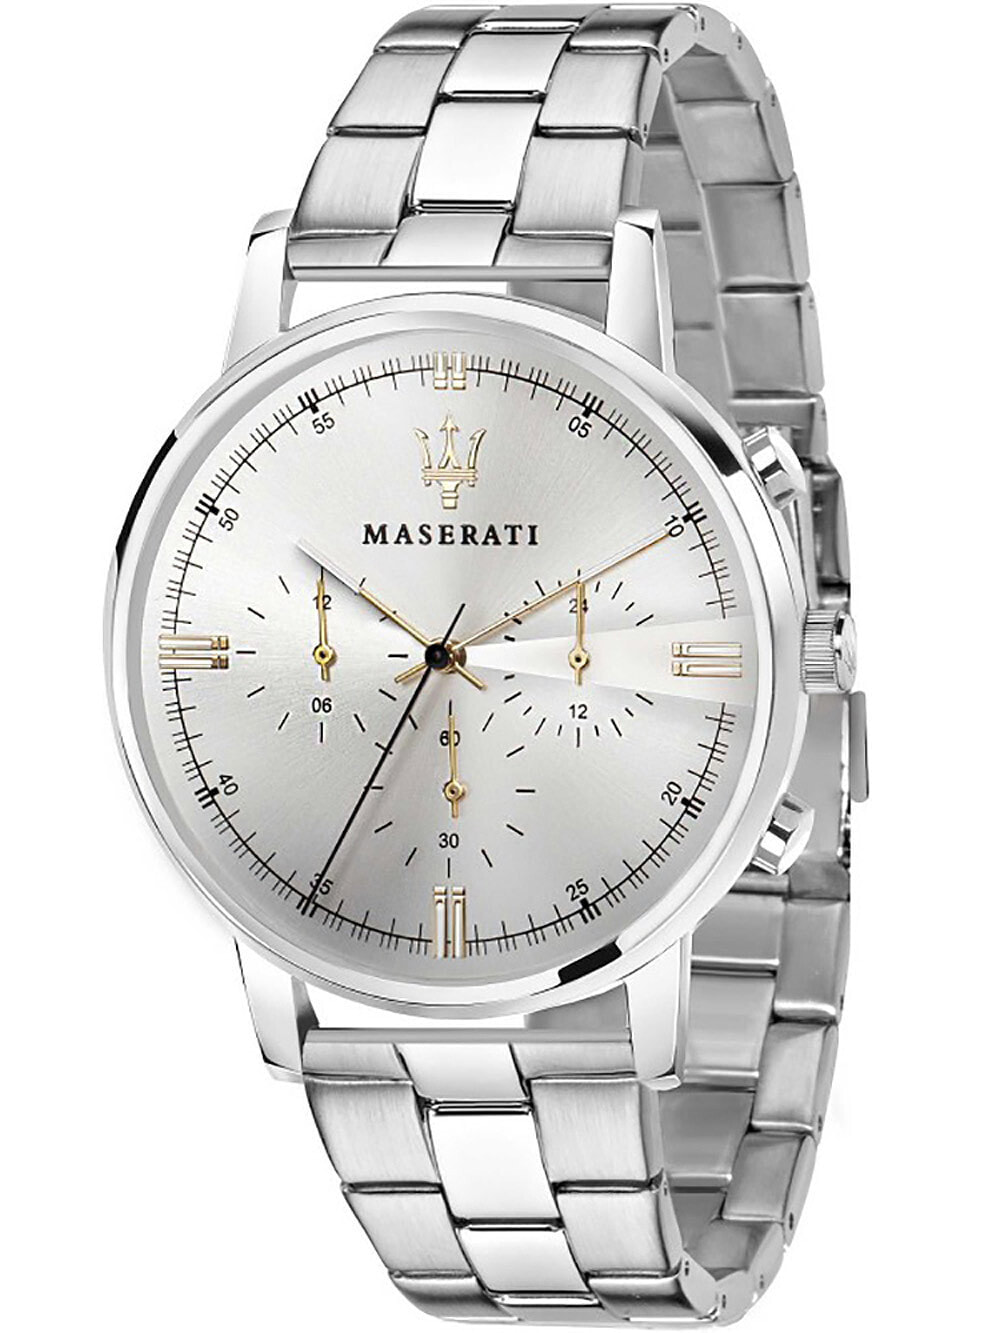 Мужские наручные часы с серебряным браслетом Maserati R8873630002 Eleganza chrono 42mm 5ATM